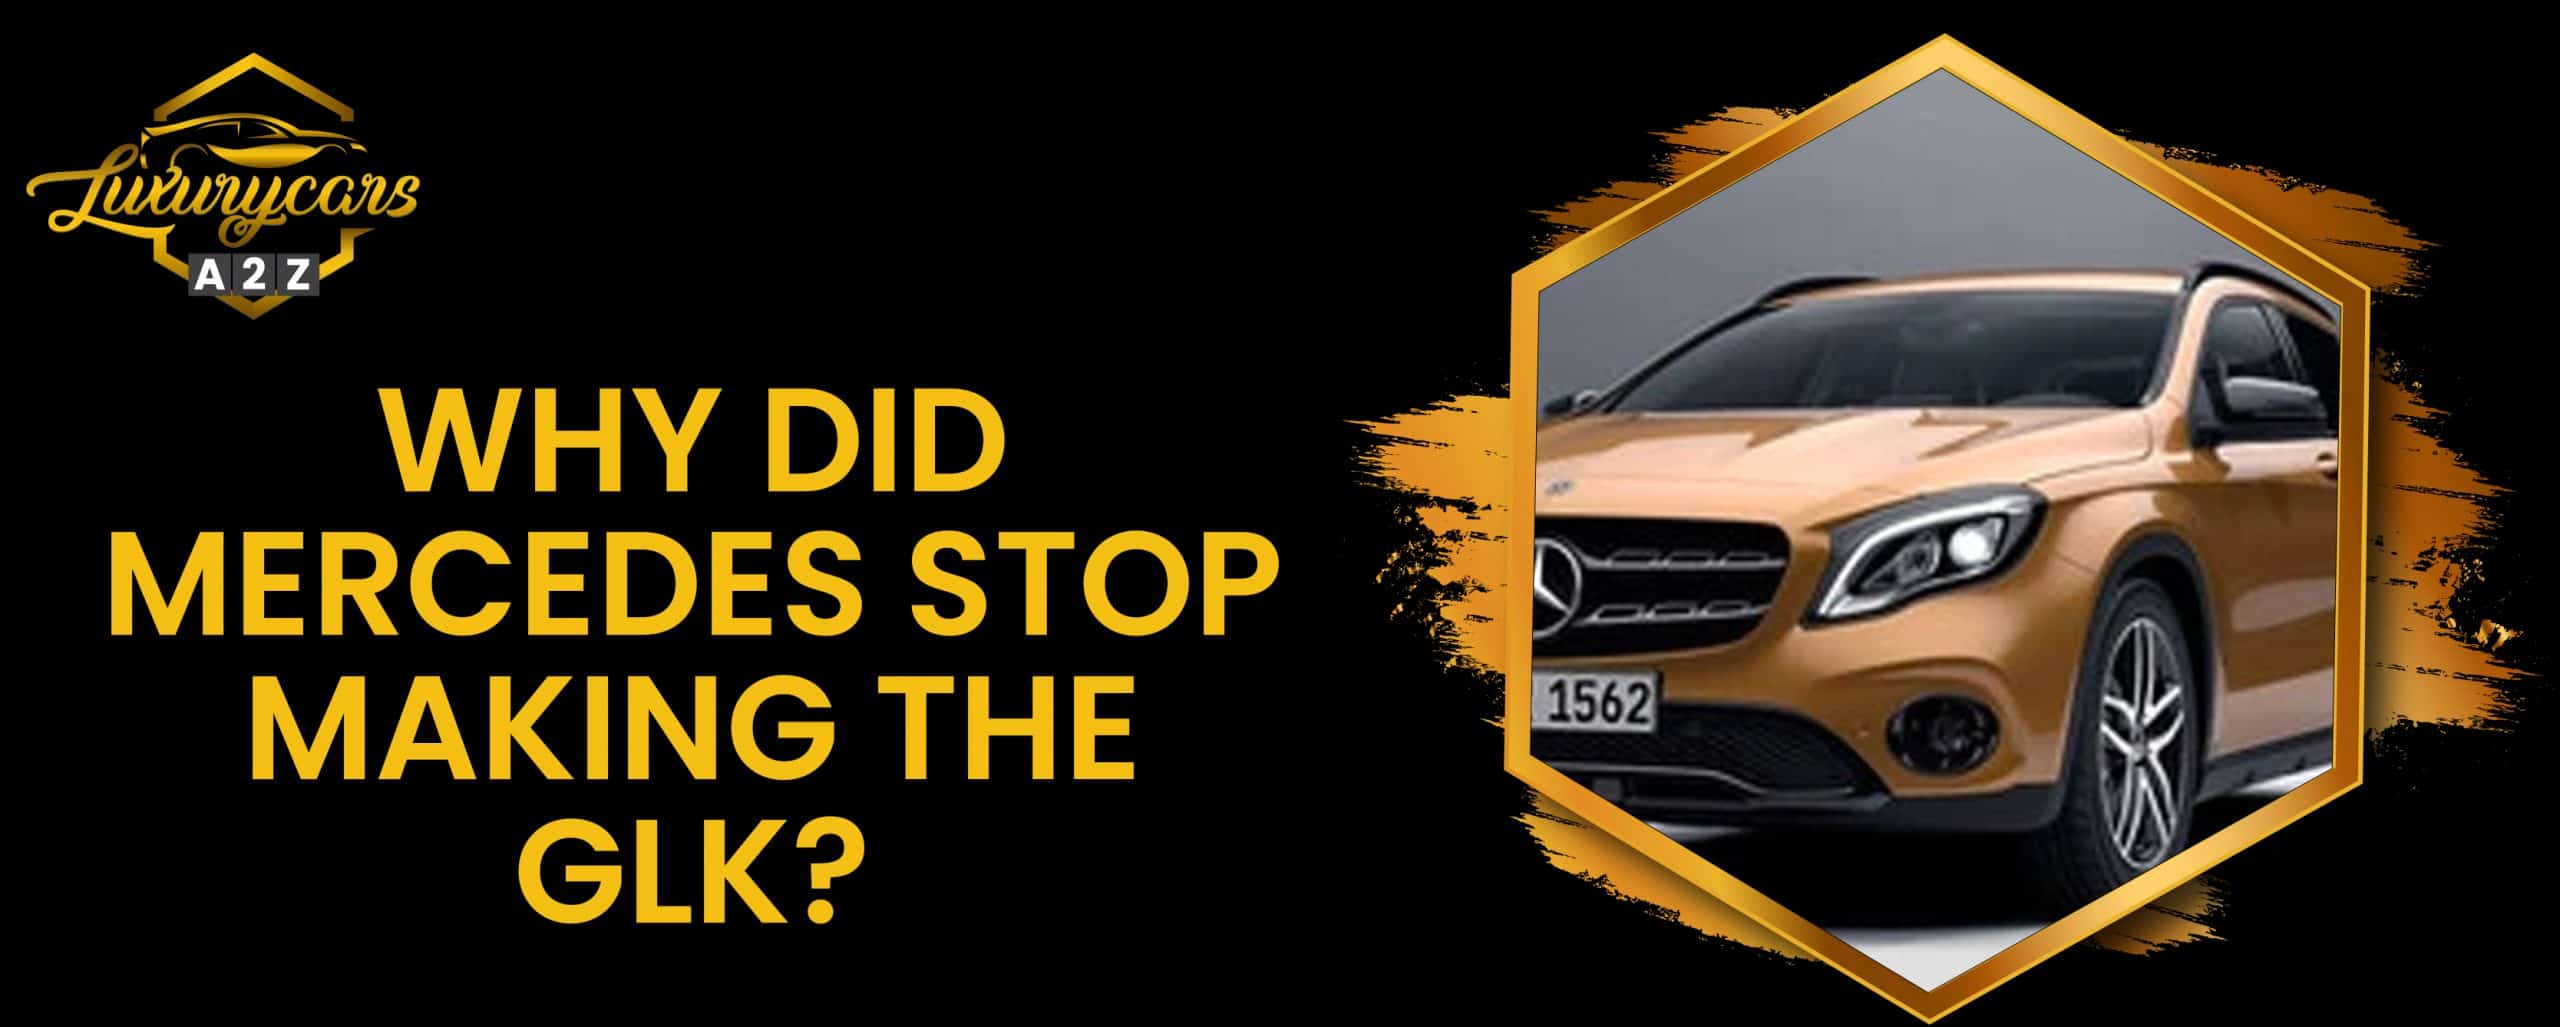 Pourquoi Mercedes a-t-elle arrêté la production du GLK ?